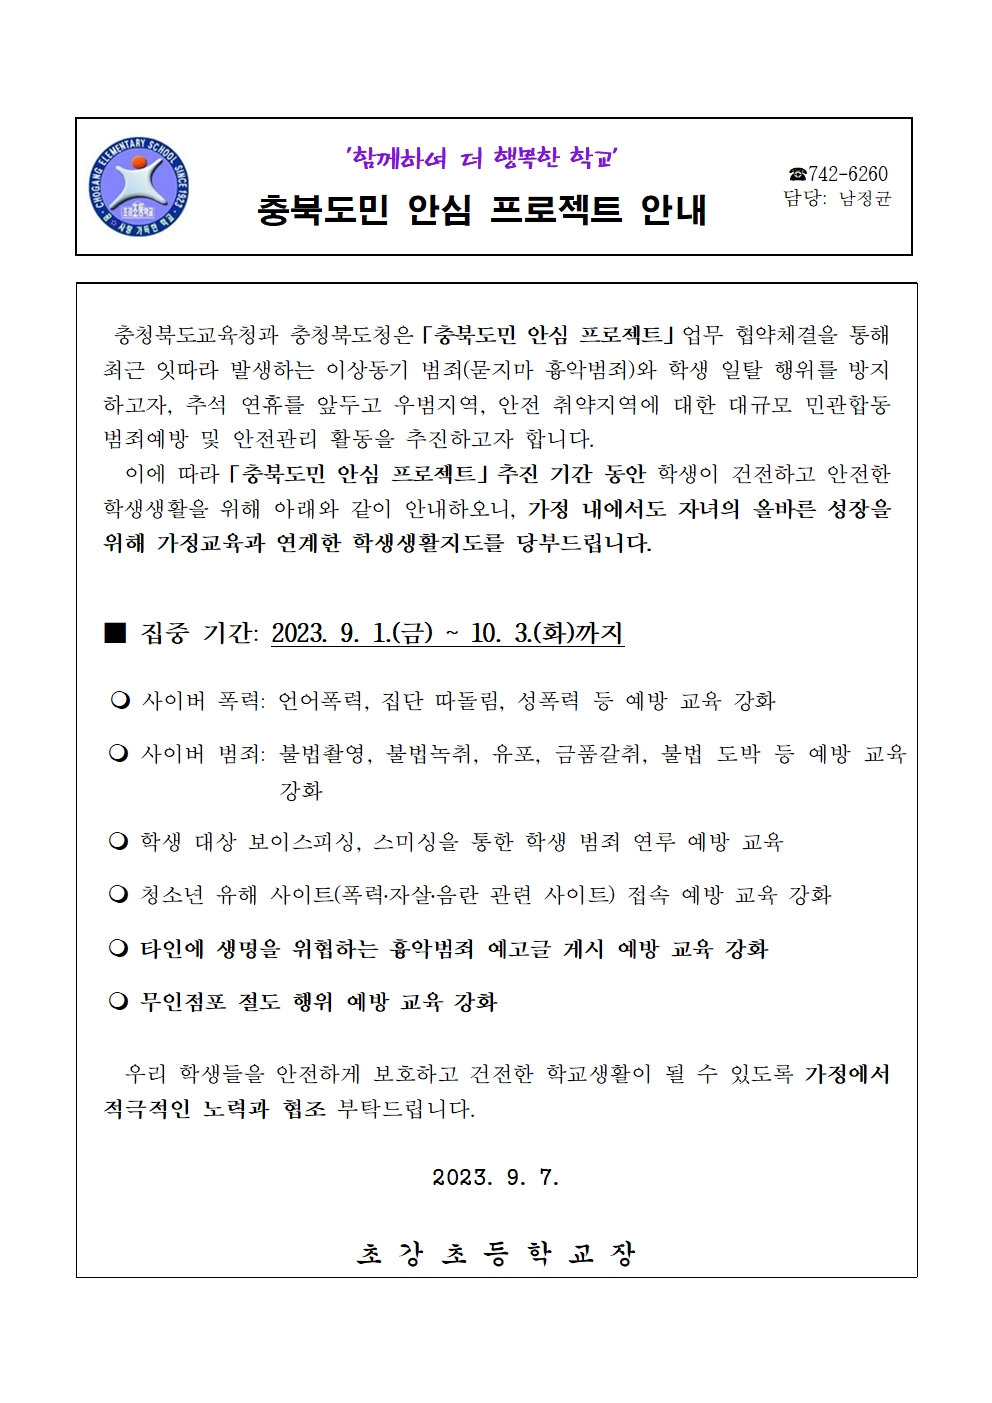 충북도민 안심프로젝트 안내 가정통신문001